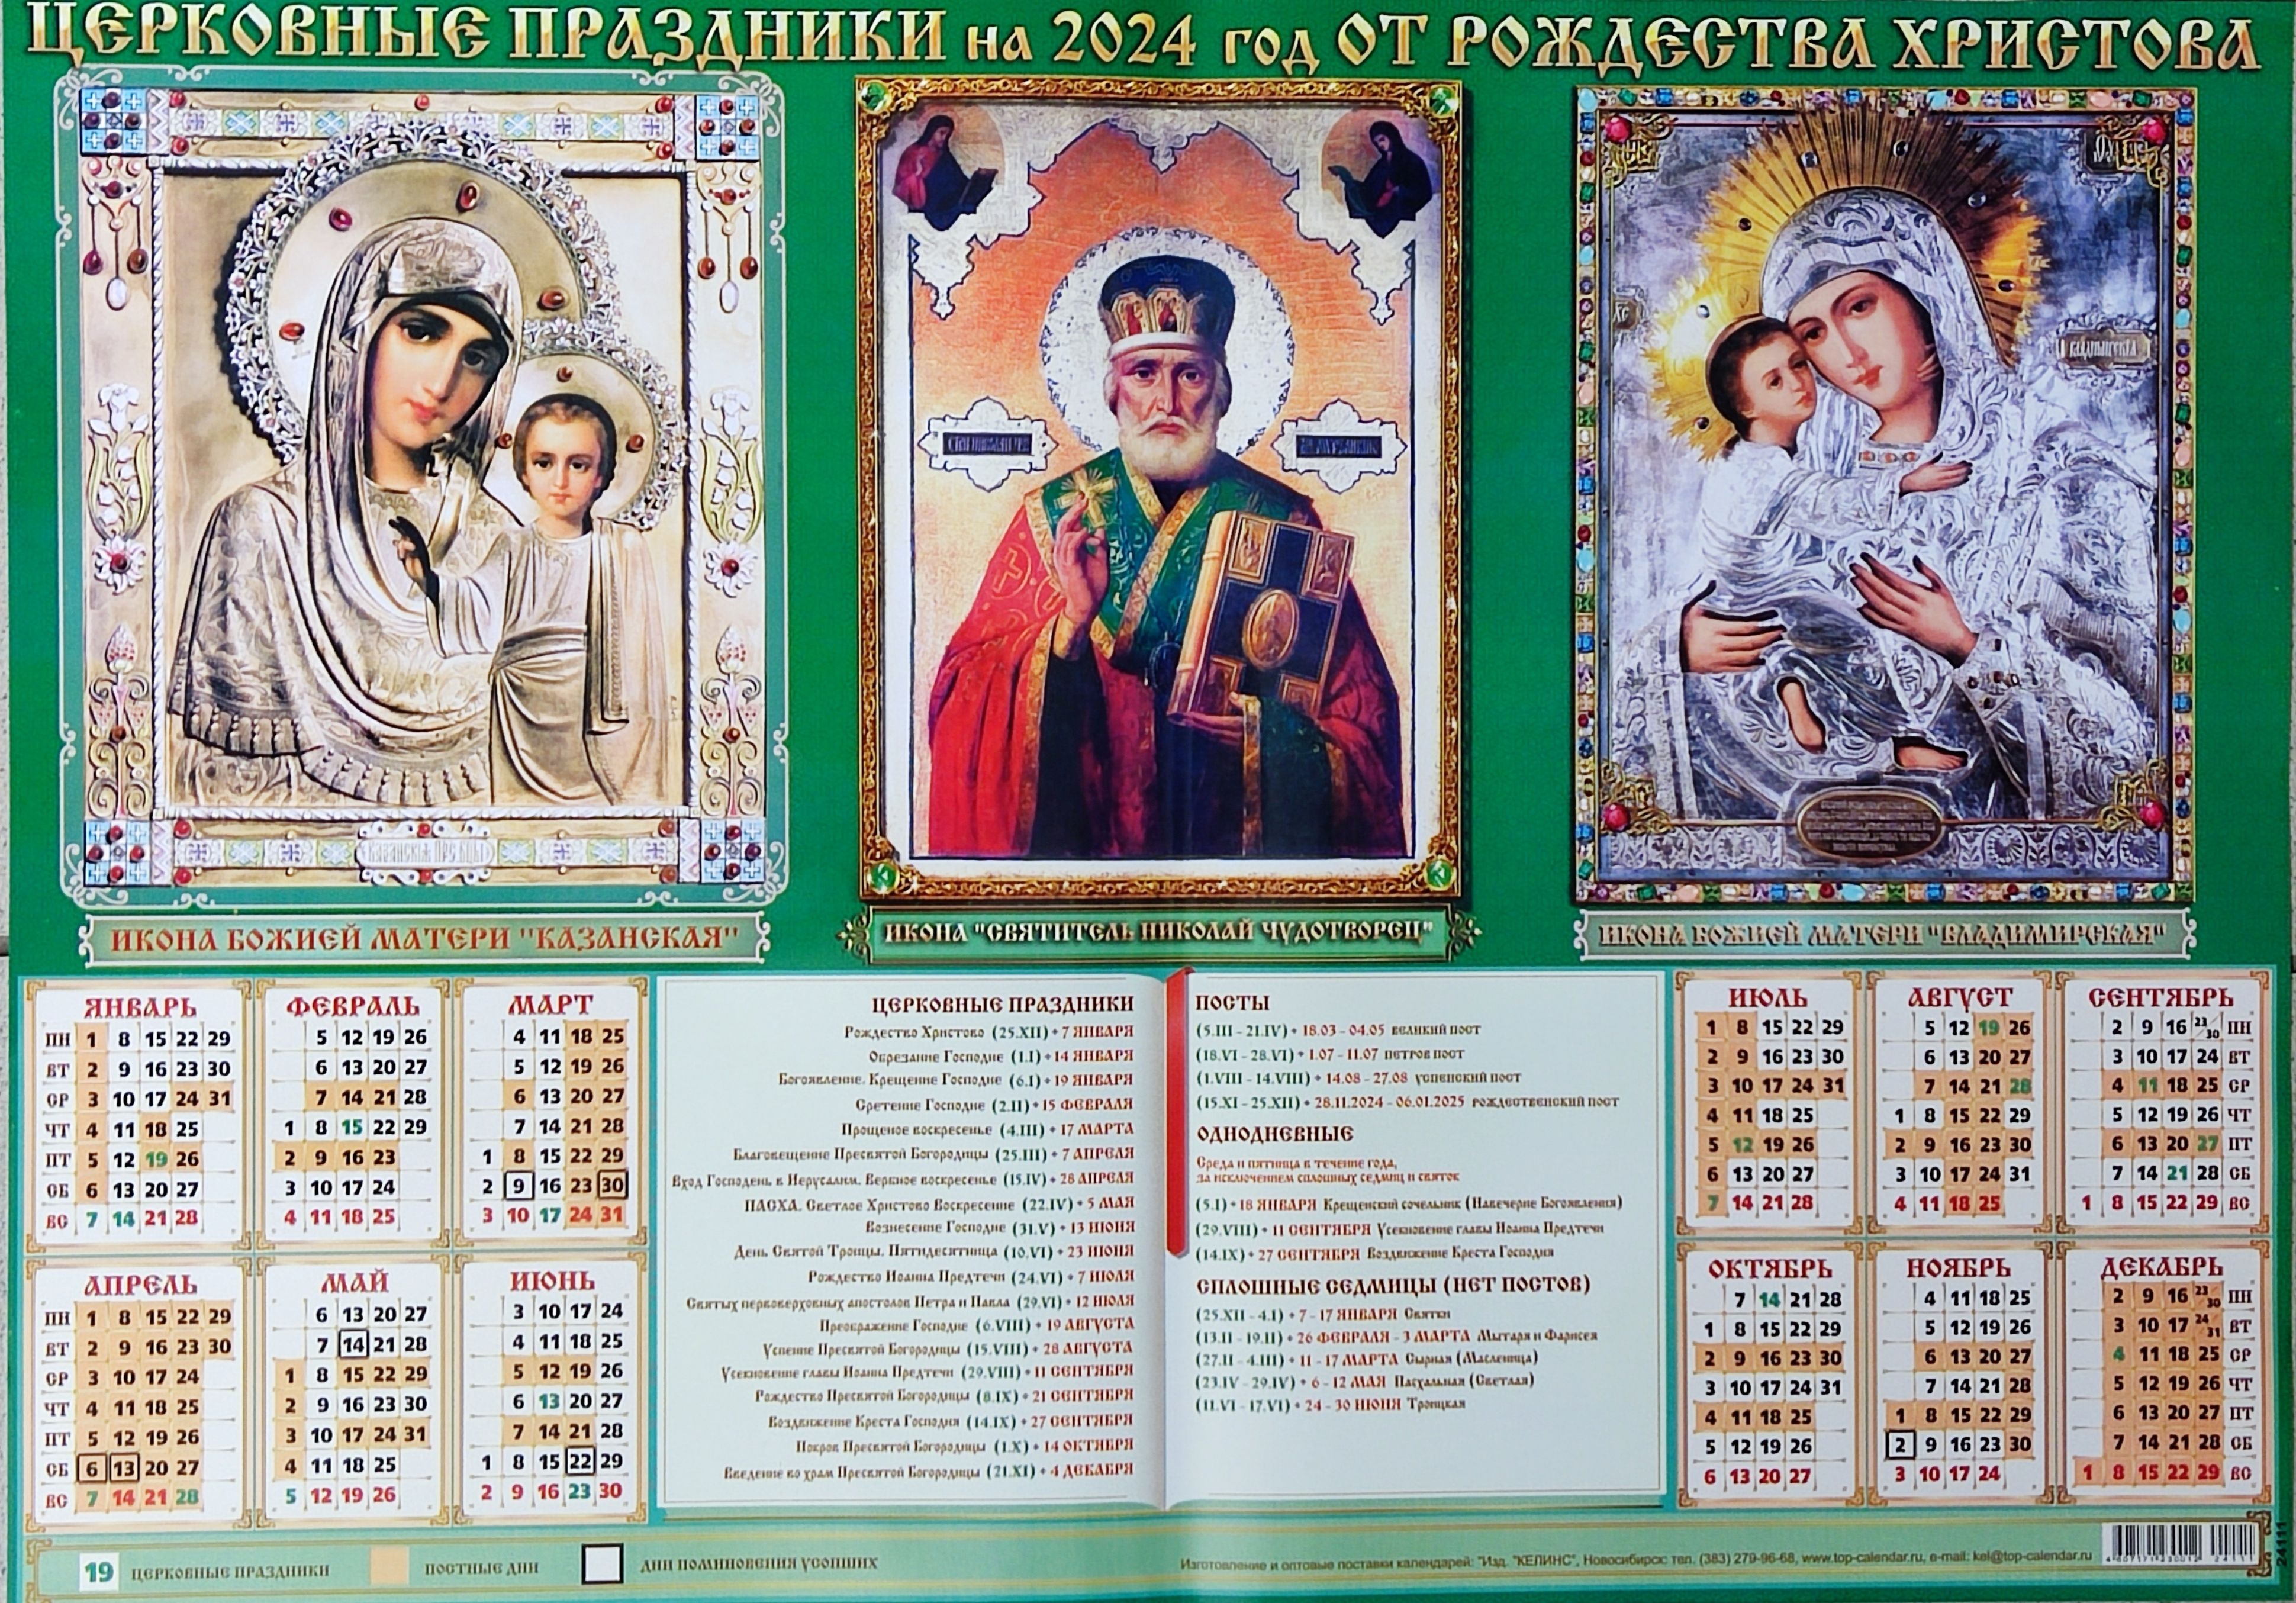 2 апреля 2024 православный календарь. Православный календарь на 2024. Божественный календарь на 2024. Православный календарь на 2024 год. Пост православный 2024.